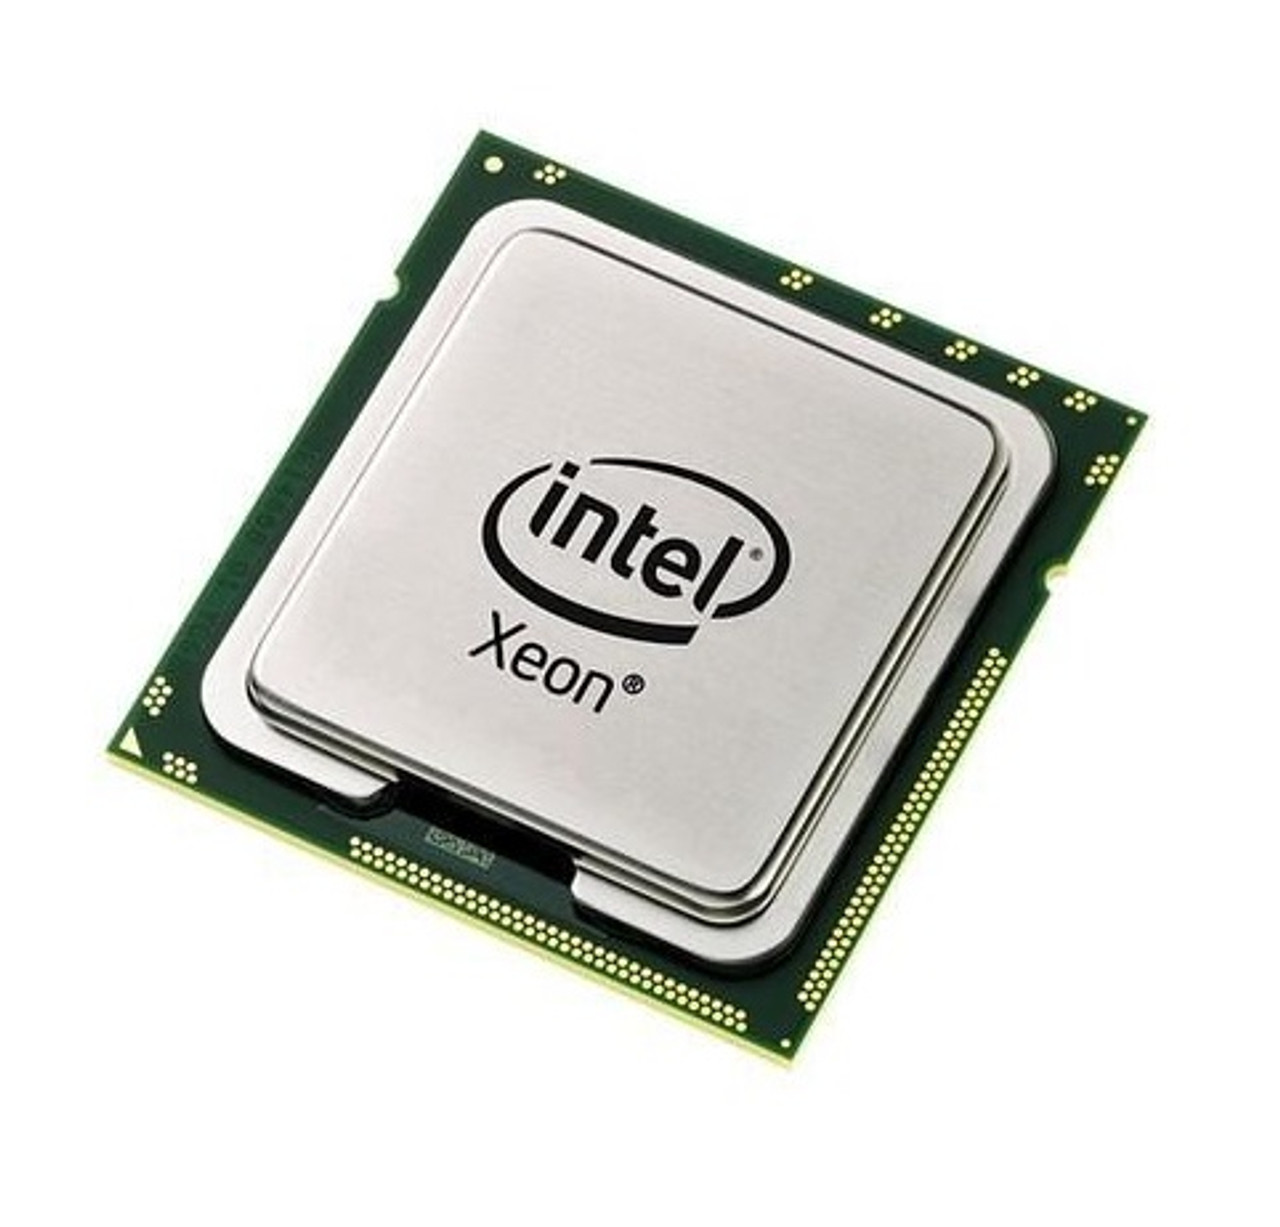 311-8576 - Dell 2.33GHz 1333MHz FSB 12MB L2 Cache Intel Xeon E5410 Quad Core Processor